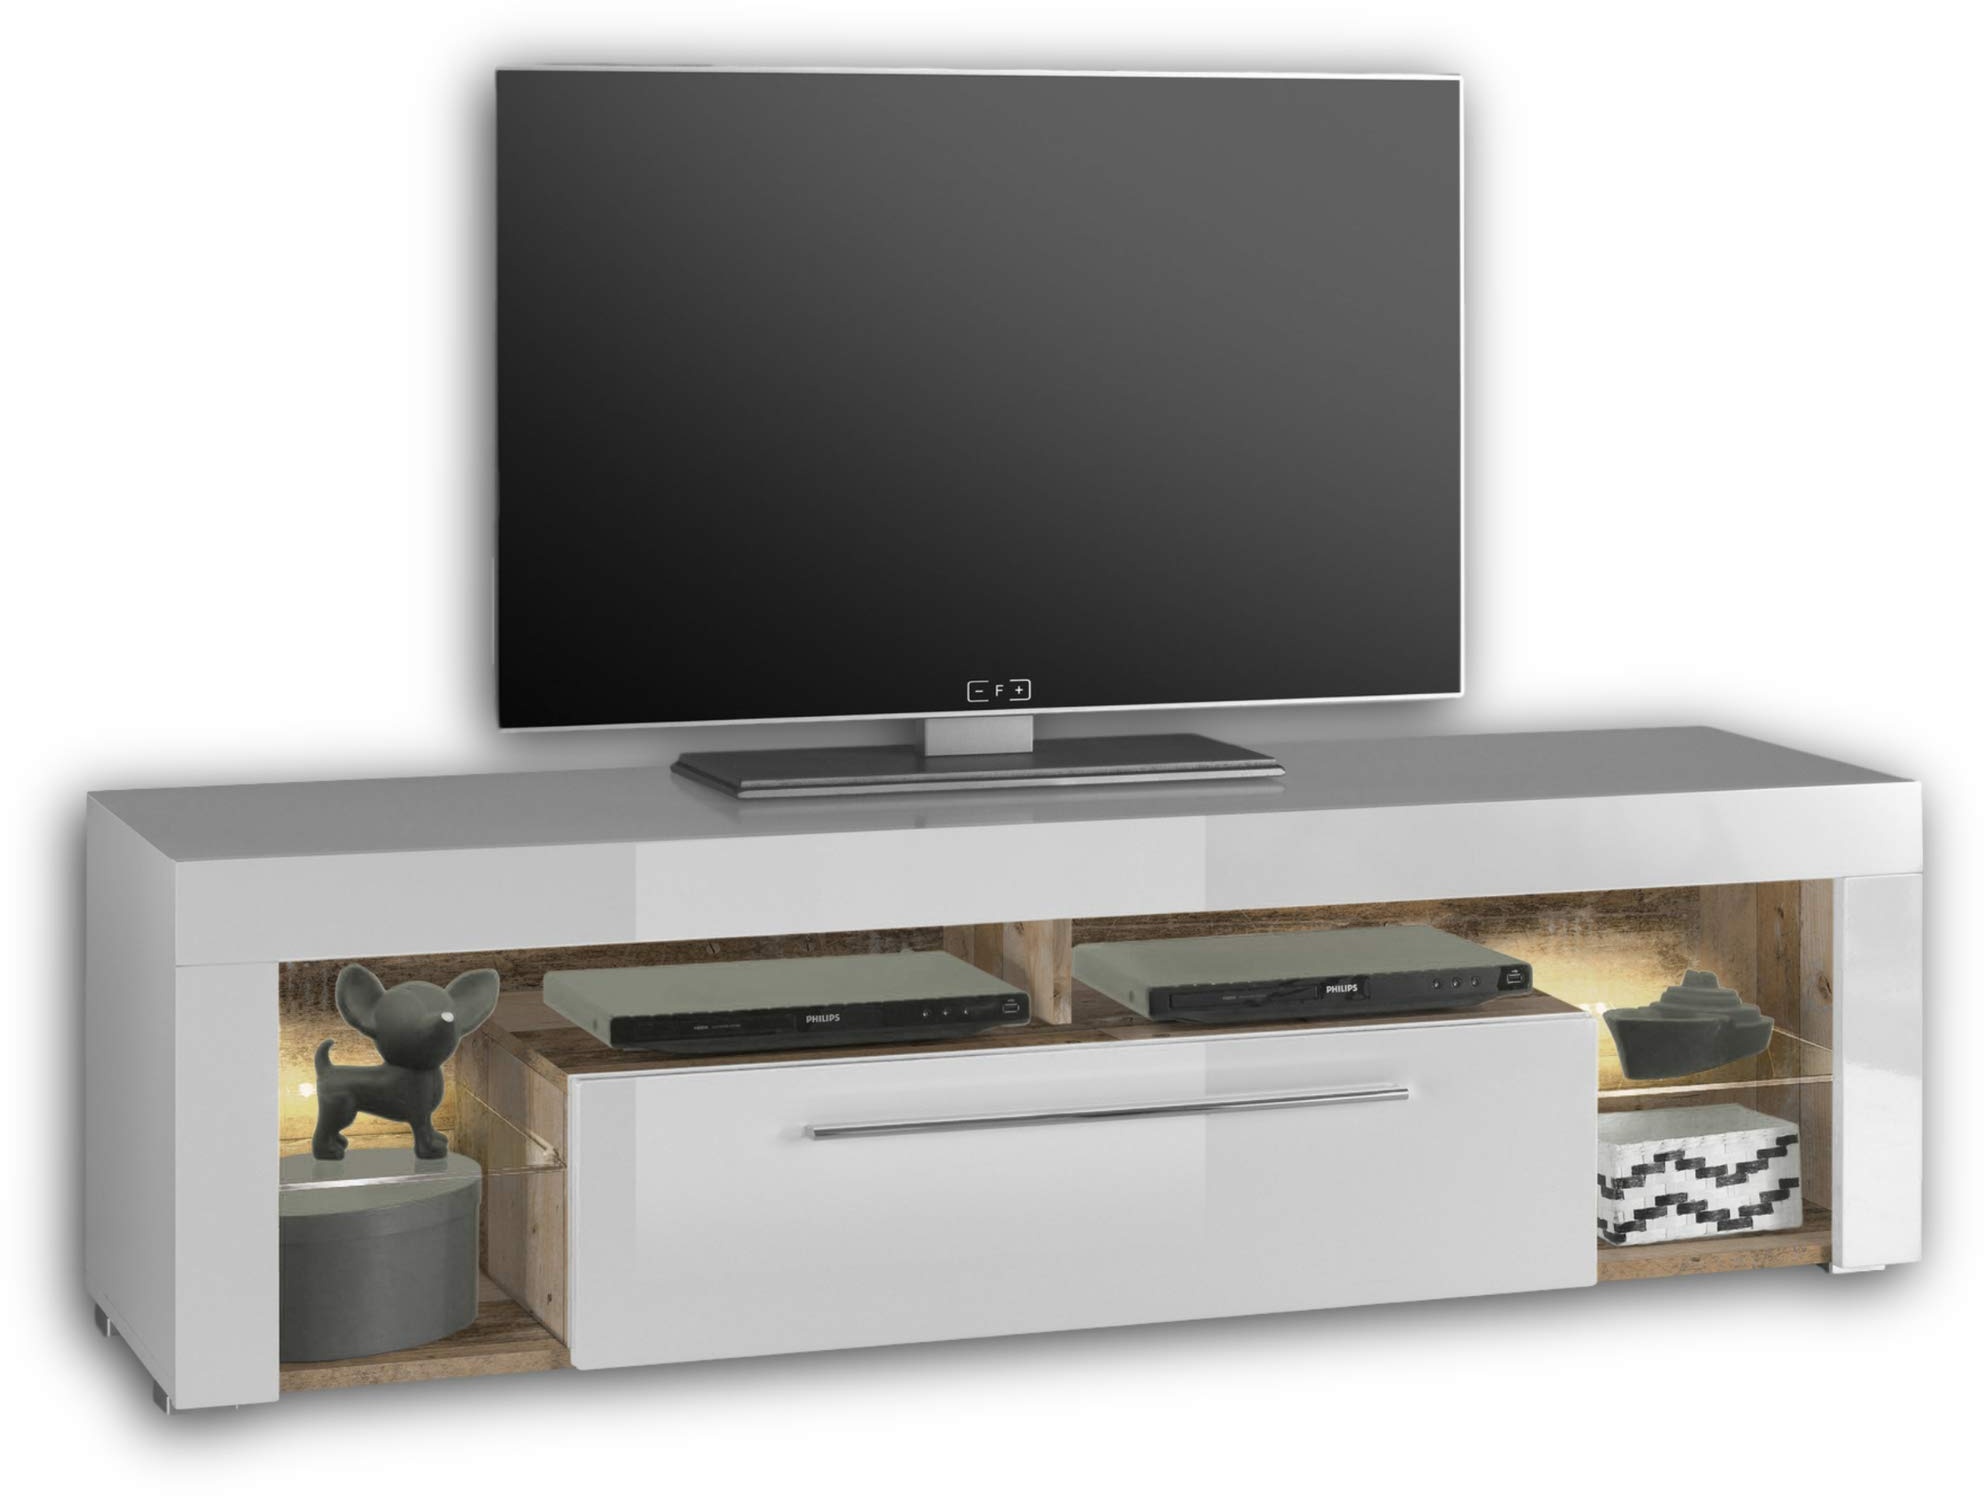 GOAL TV-Lowboard in Old Style Optik, Weiß mit LED-Beleuchtung - hochwertiges TV-Board mit viel Stauraum für Ihr Wohnzimmer - 153 x 44 x 44 cm (B/H/T)